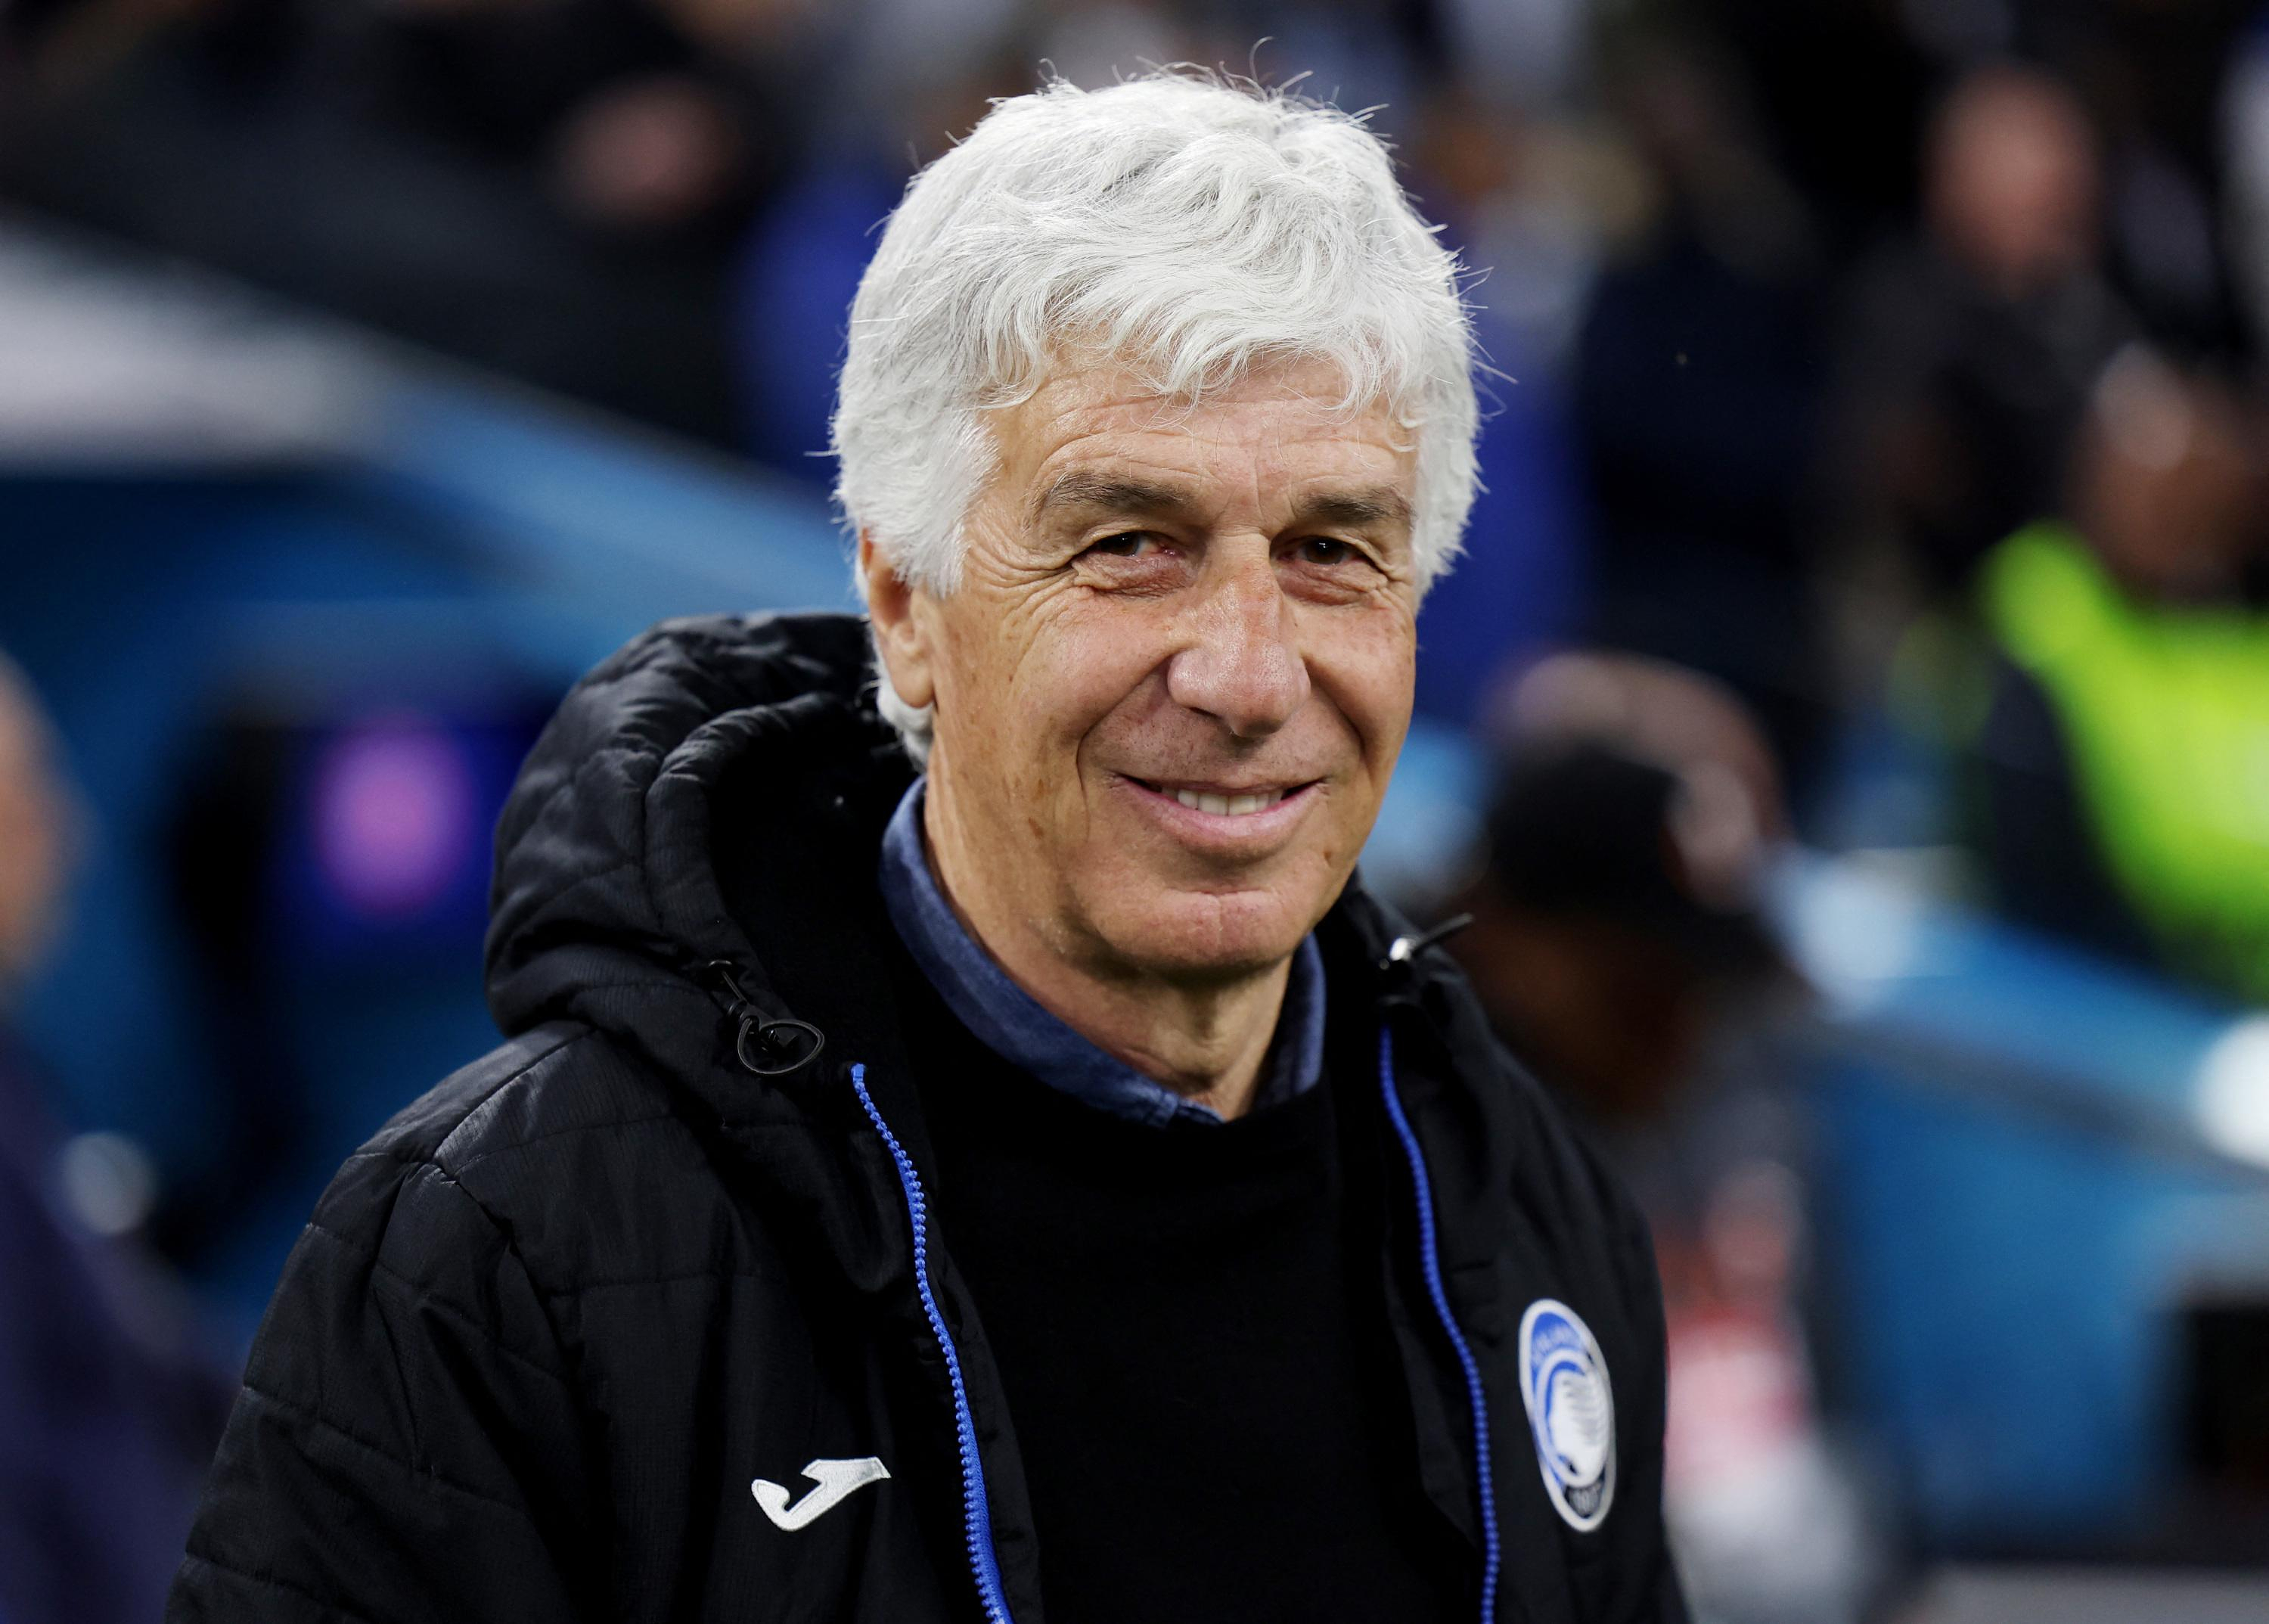 Europa League: “a very positive result” for the Atalanta coach